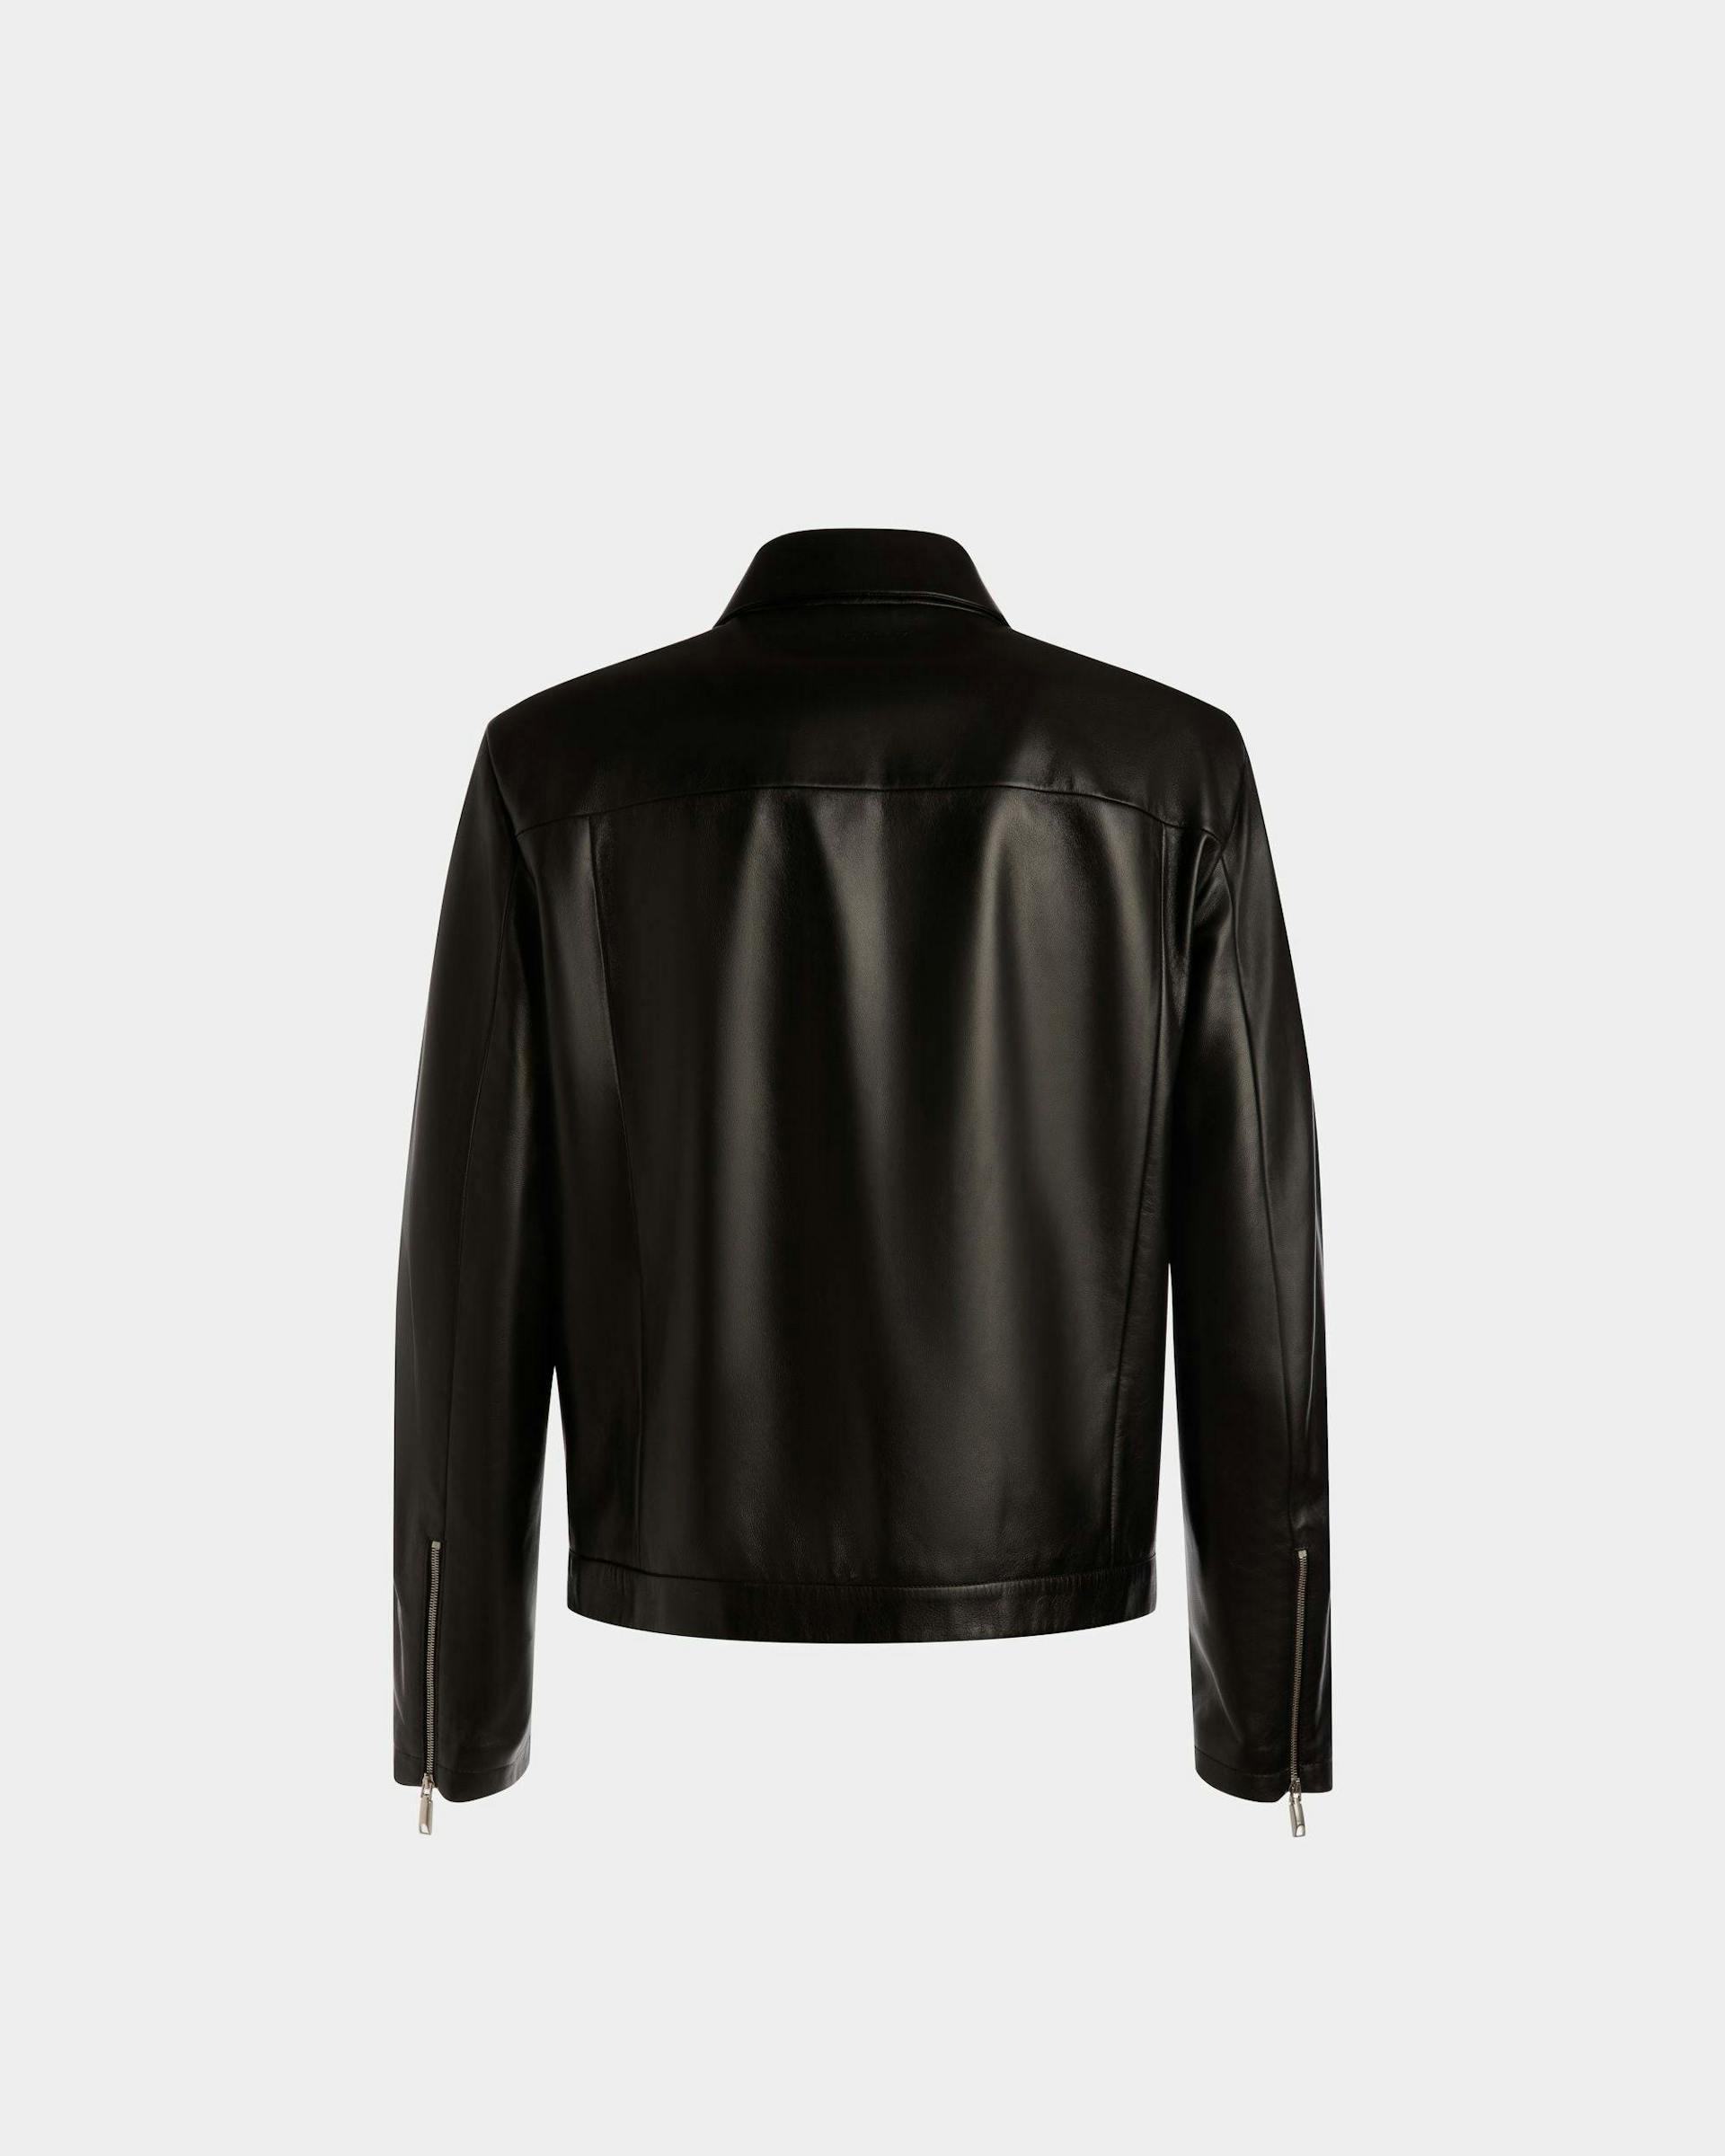 Bomber Jacket | Men's Bomber | Black Leather | Bally